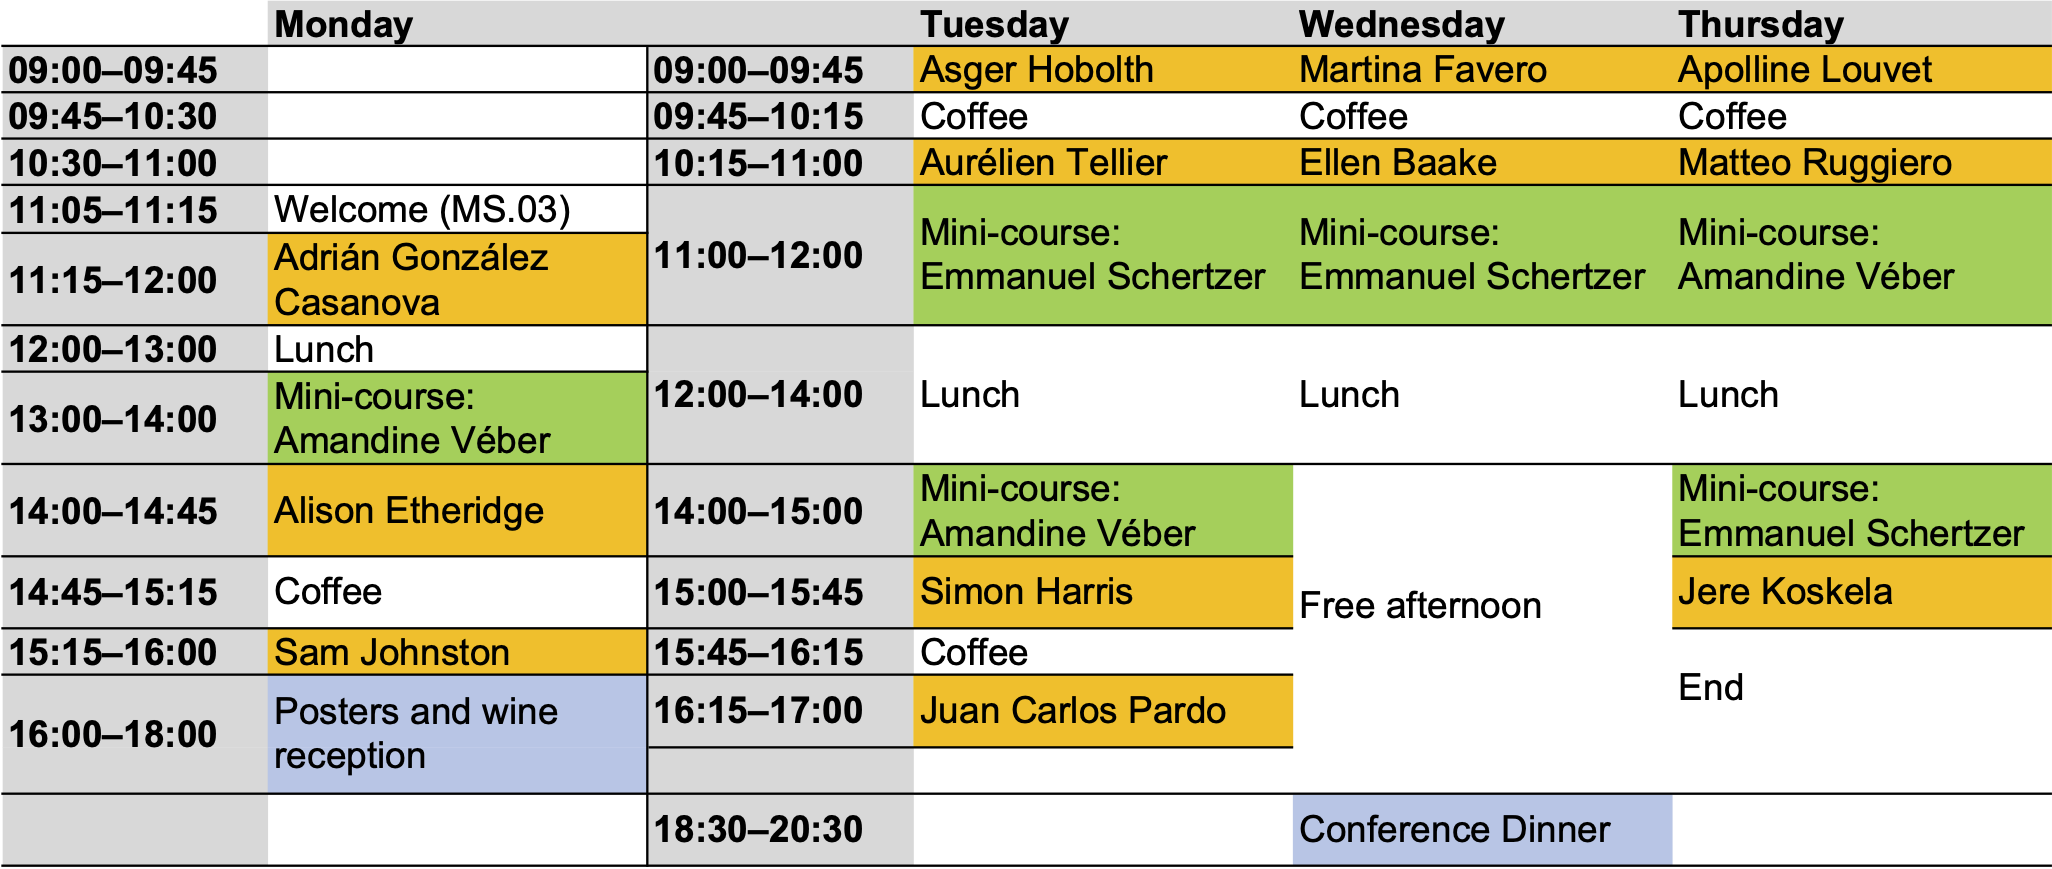 Workshop timetable